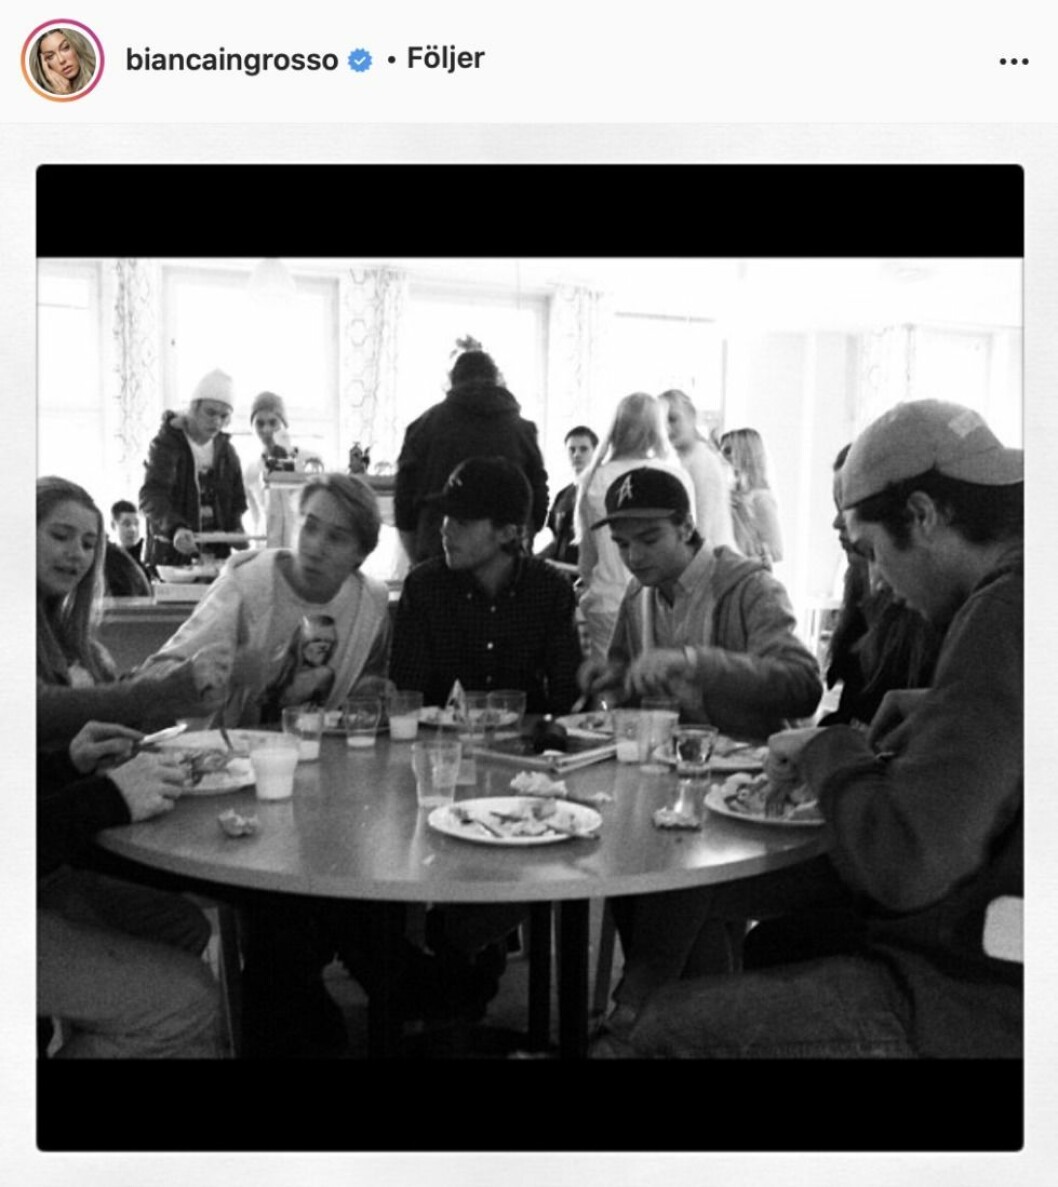 En svartvitbild med ungdomar som sitter runt ett bord och äter